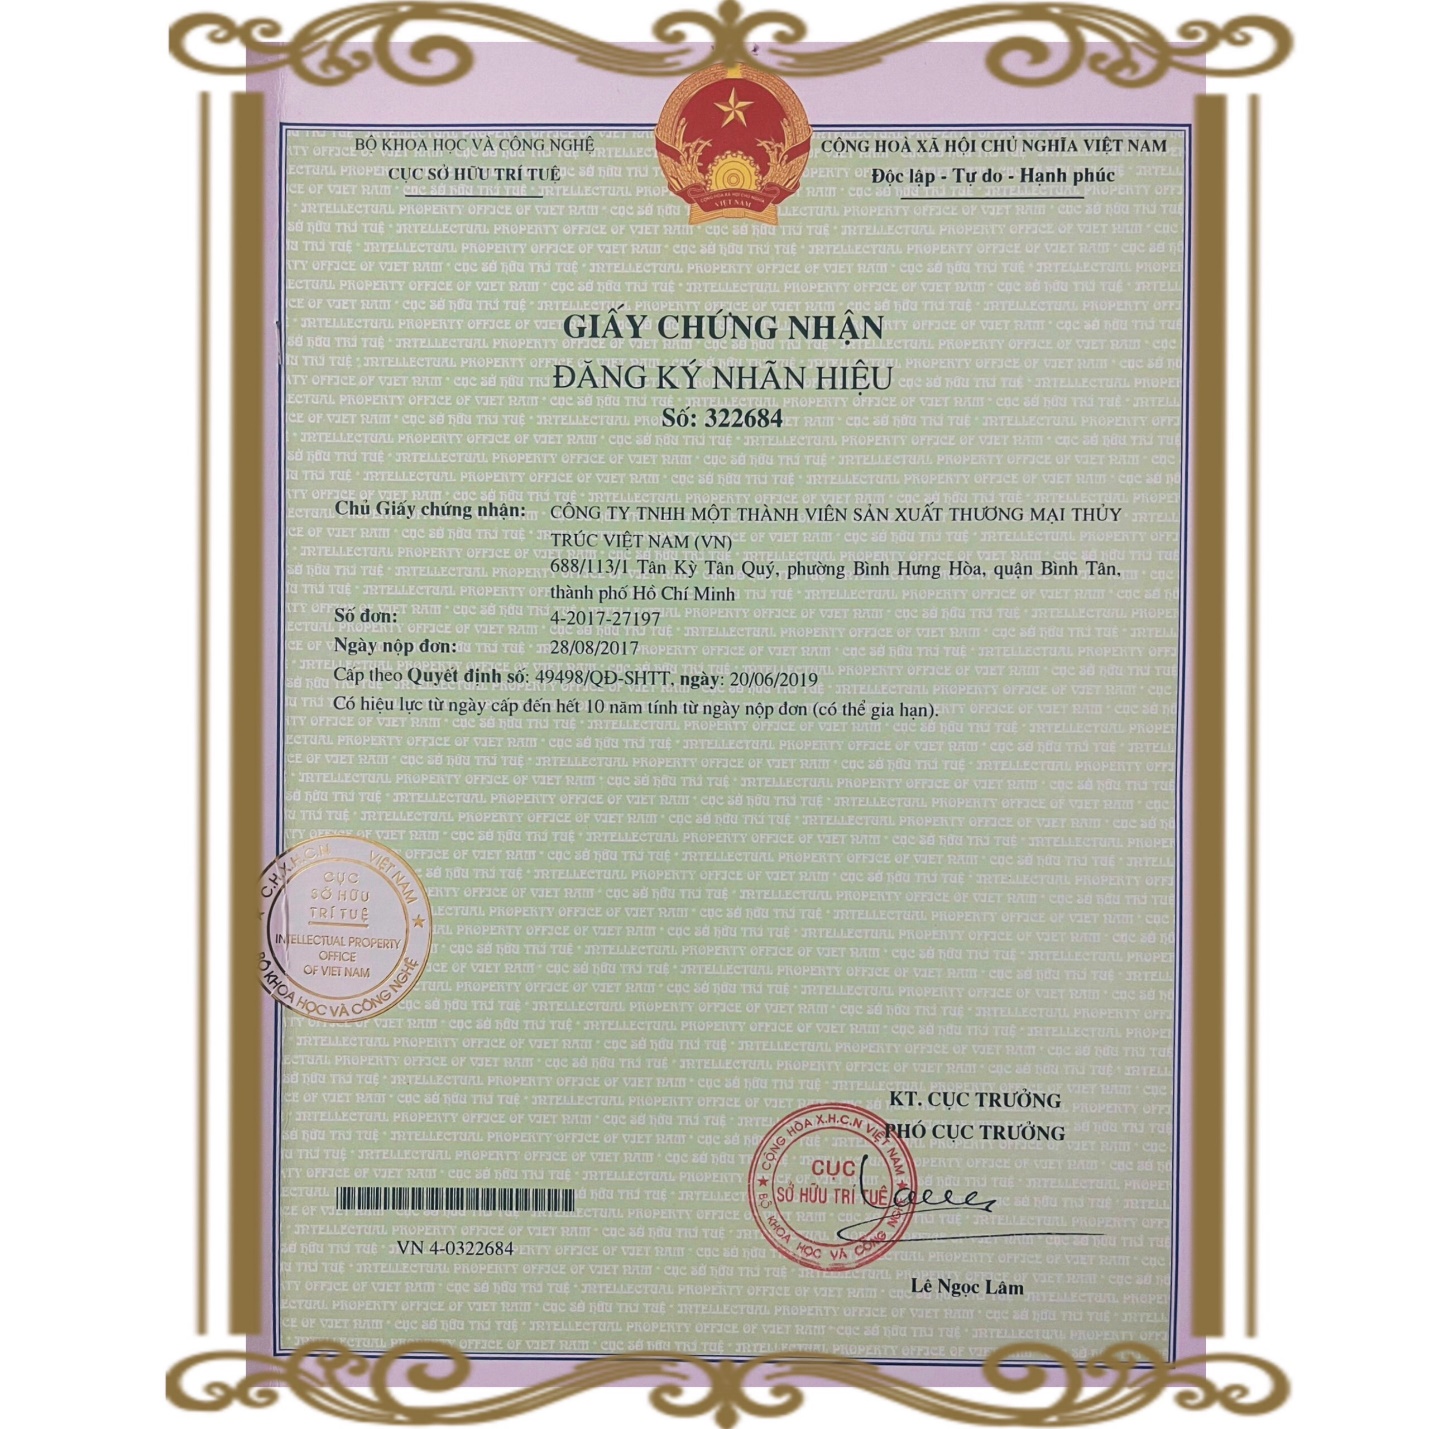 Mỹ phẩm “Miền Thảo Mộc” được Cục Sở hữu Trí tuệ Việt Nam cấp văn bằng bảo hộ độc quyền - 1